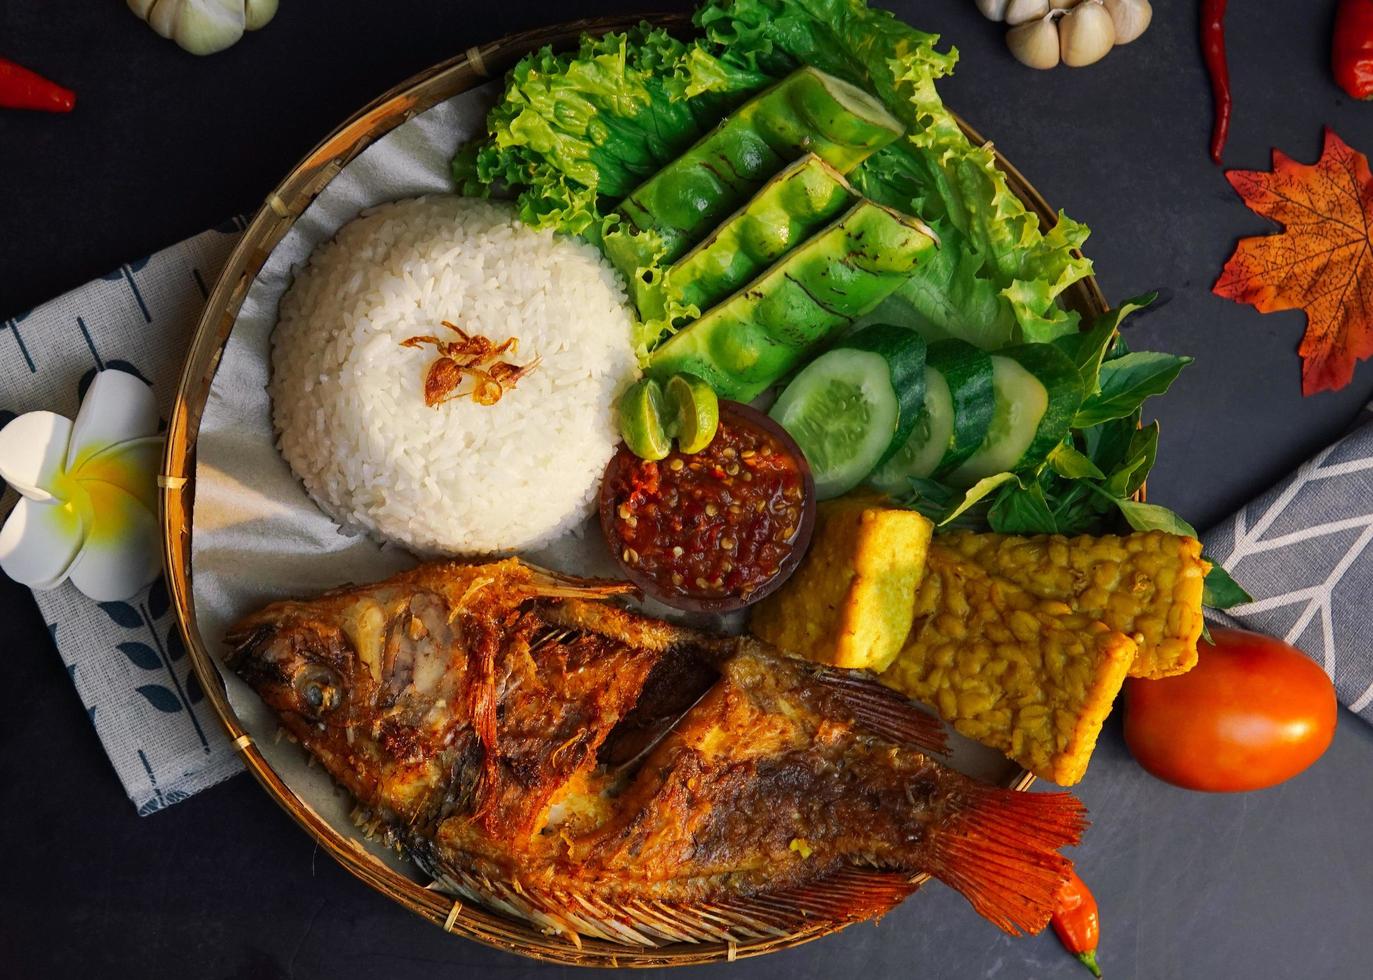 un pacchetto di riso, pesce fritto e alcune verdure fresche su sfondo nero foto